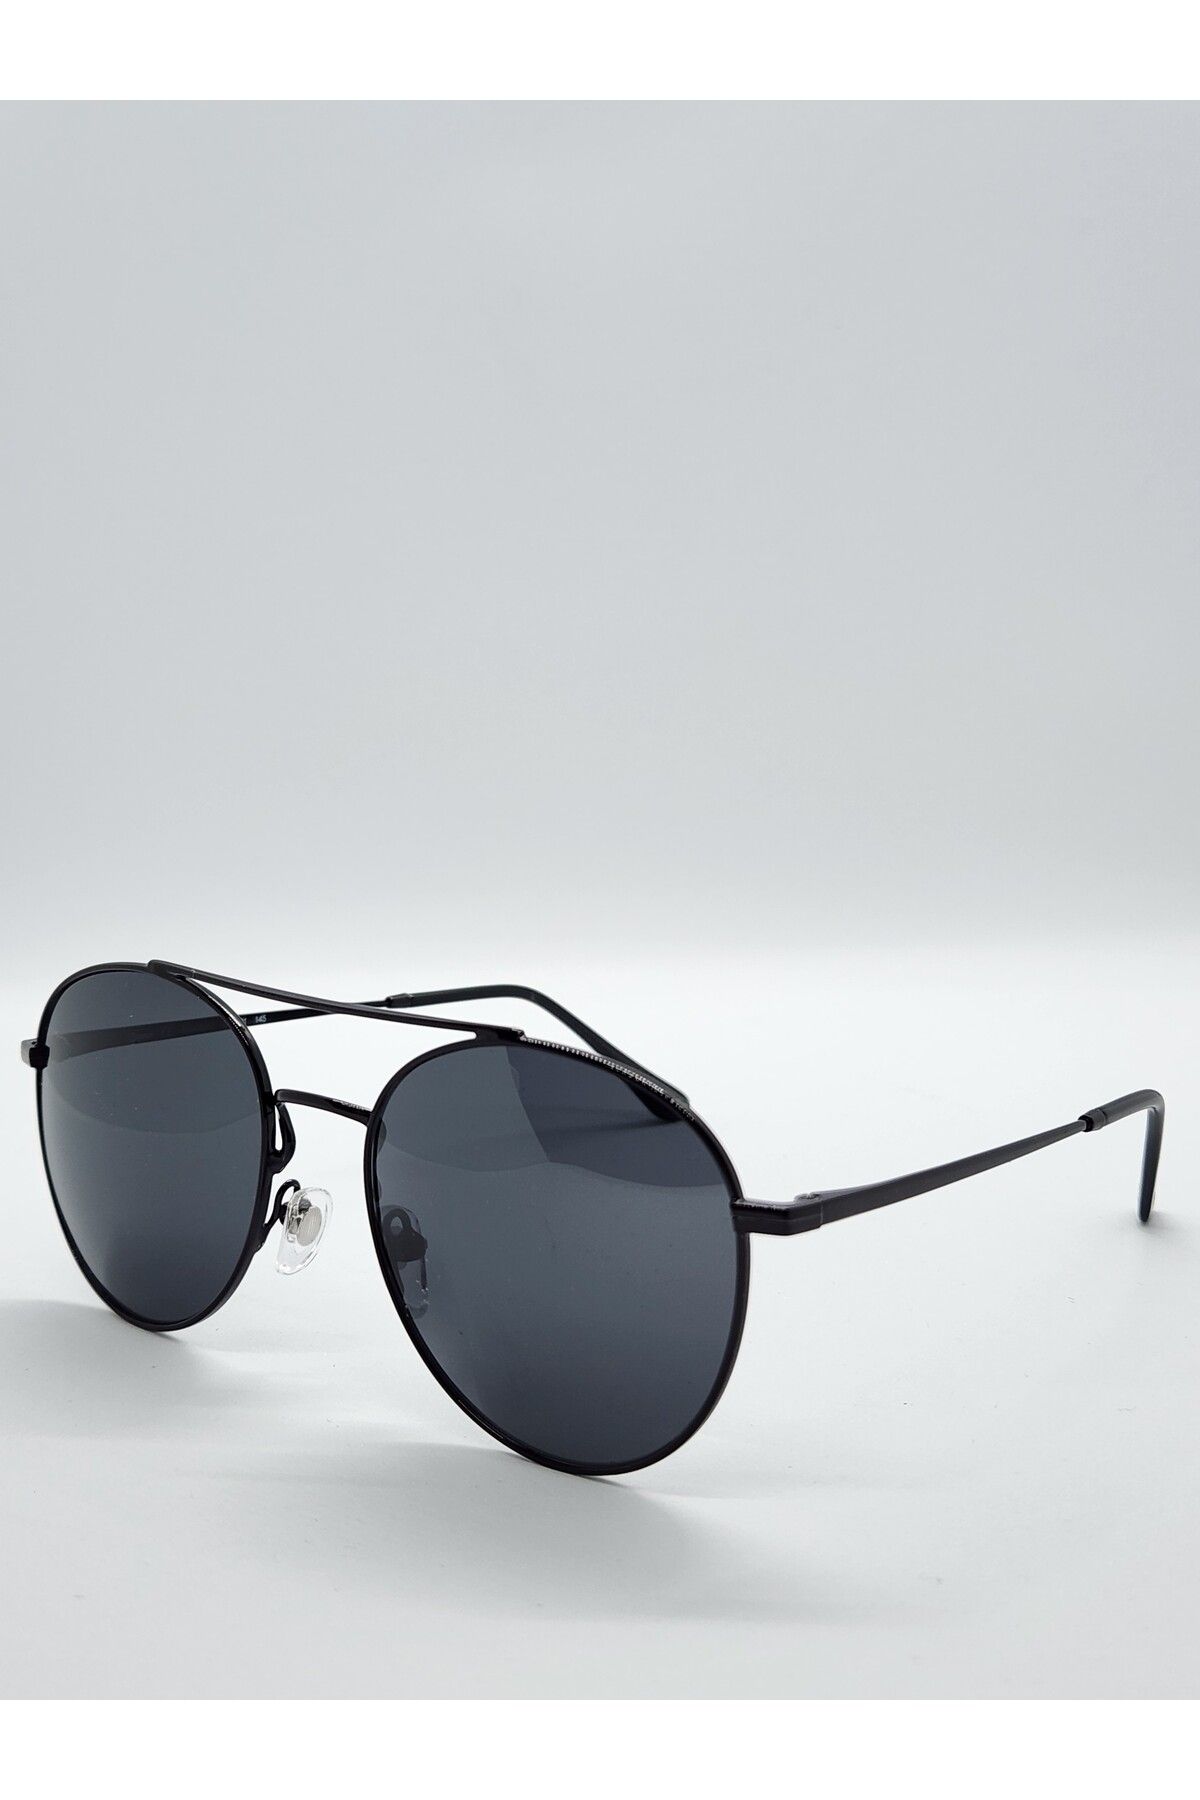 Benx Sunglasses Köprülü Yuvarlak Model Unisex Güneş Gözlüğü